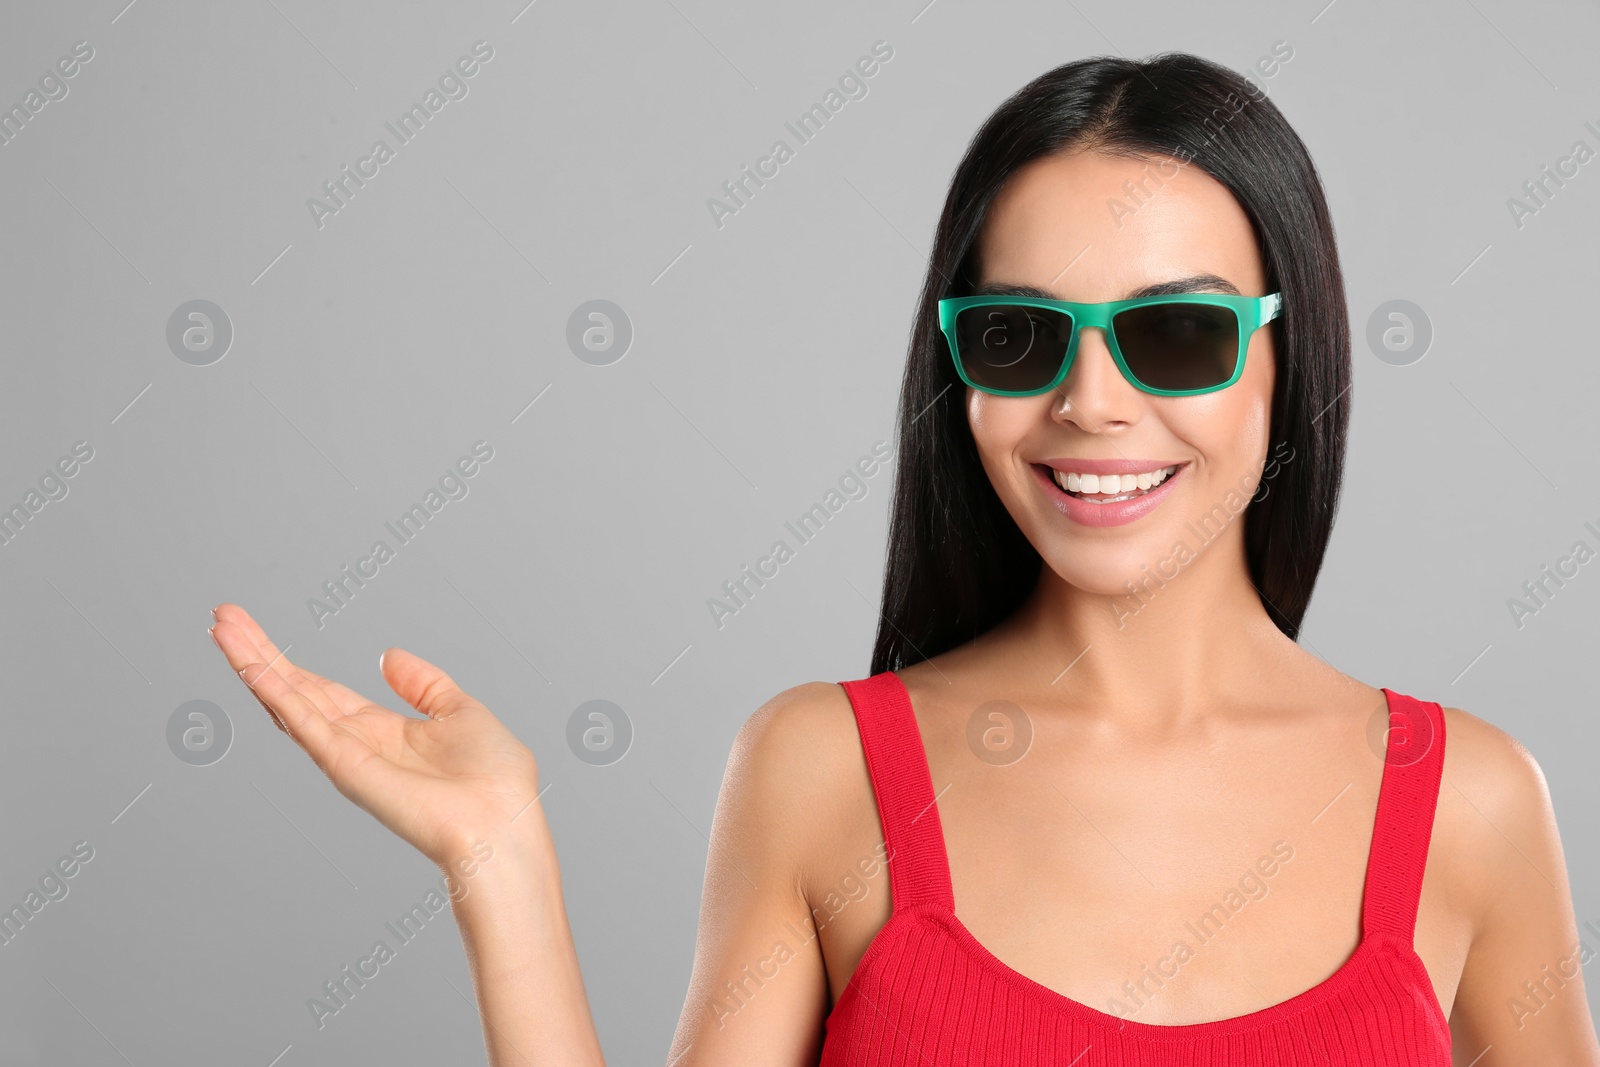 Photo of Beautiful woman wearing sunglasses on grey background